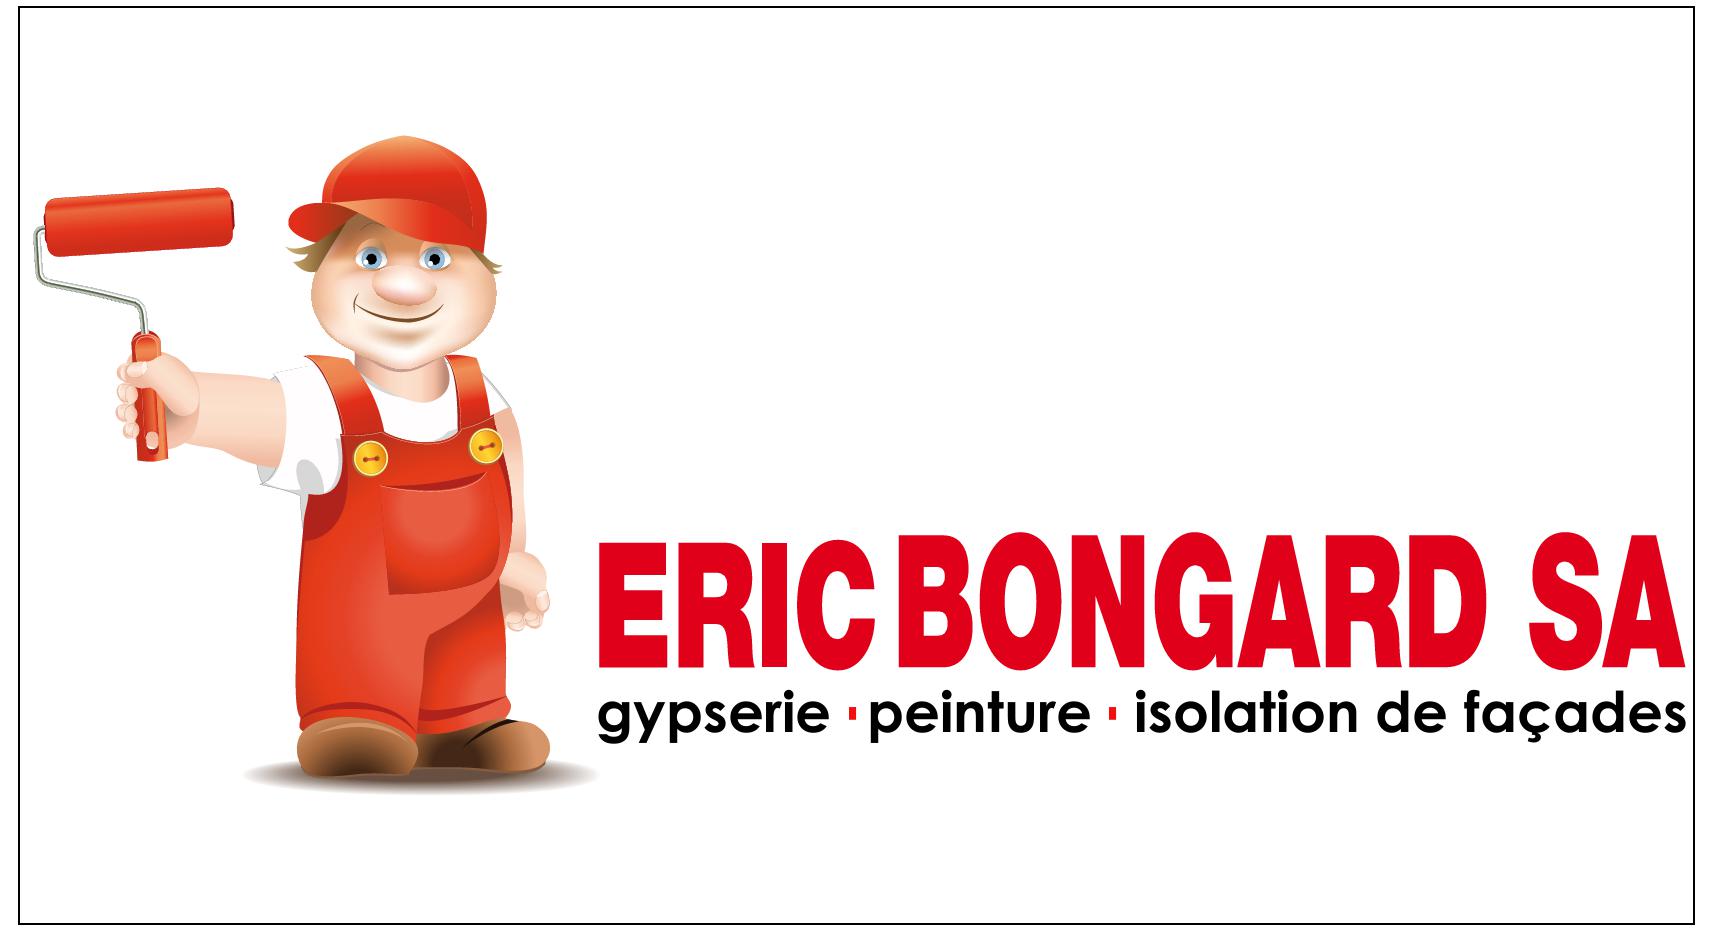 Eric Bongard SA